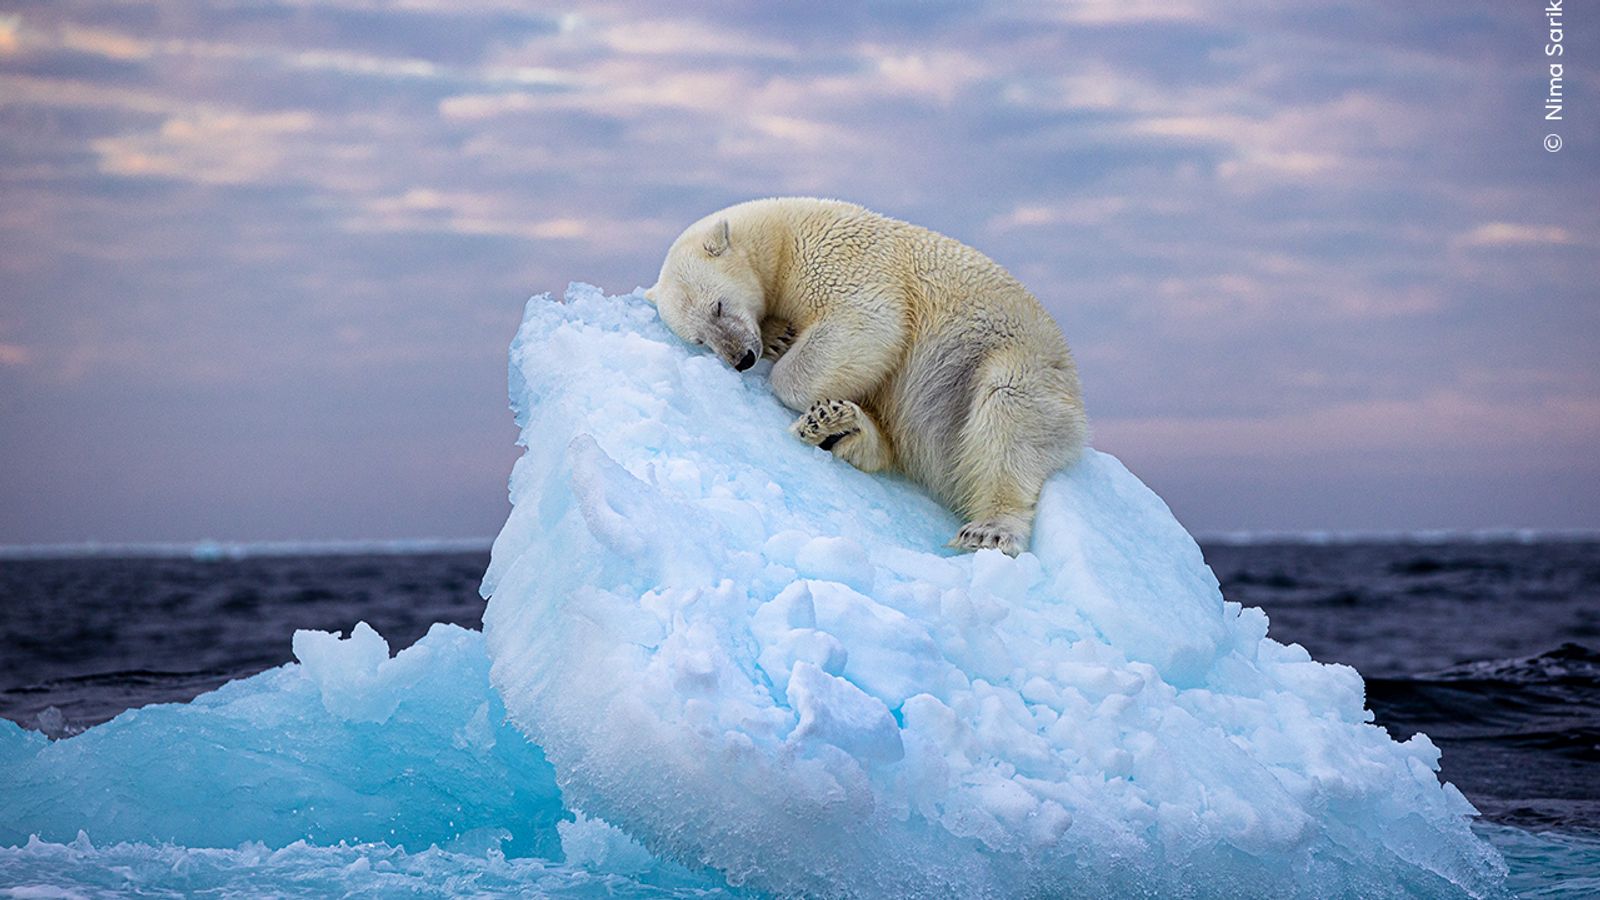 Årets dyrelivsfotograf: Britisk amatørfotografs bilde av sovende isbjørn vinner topp dyrelivspris |  Ents & Arts News